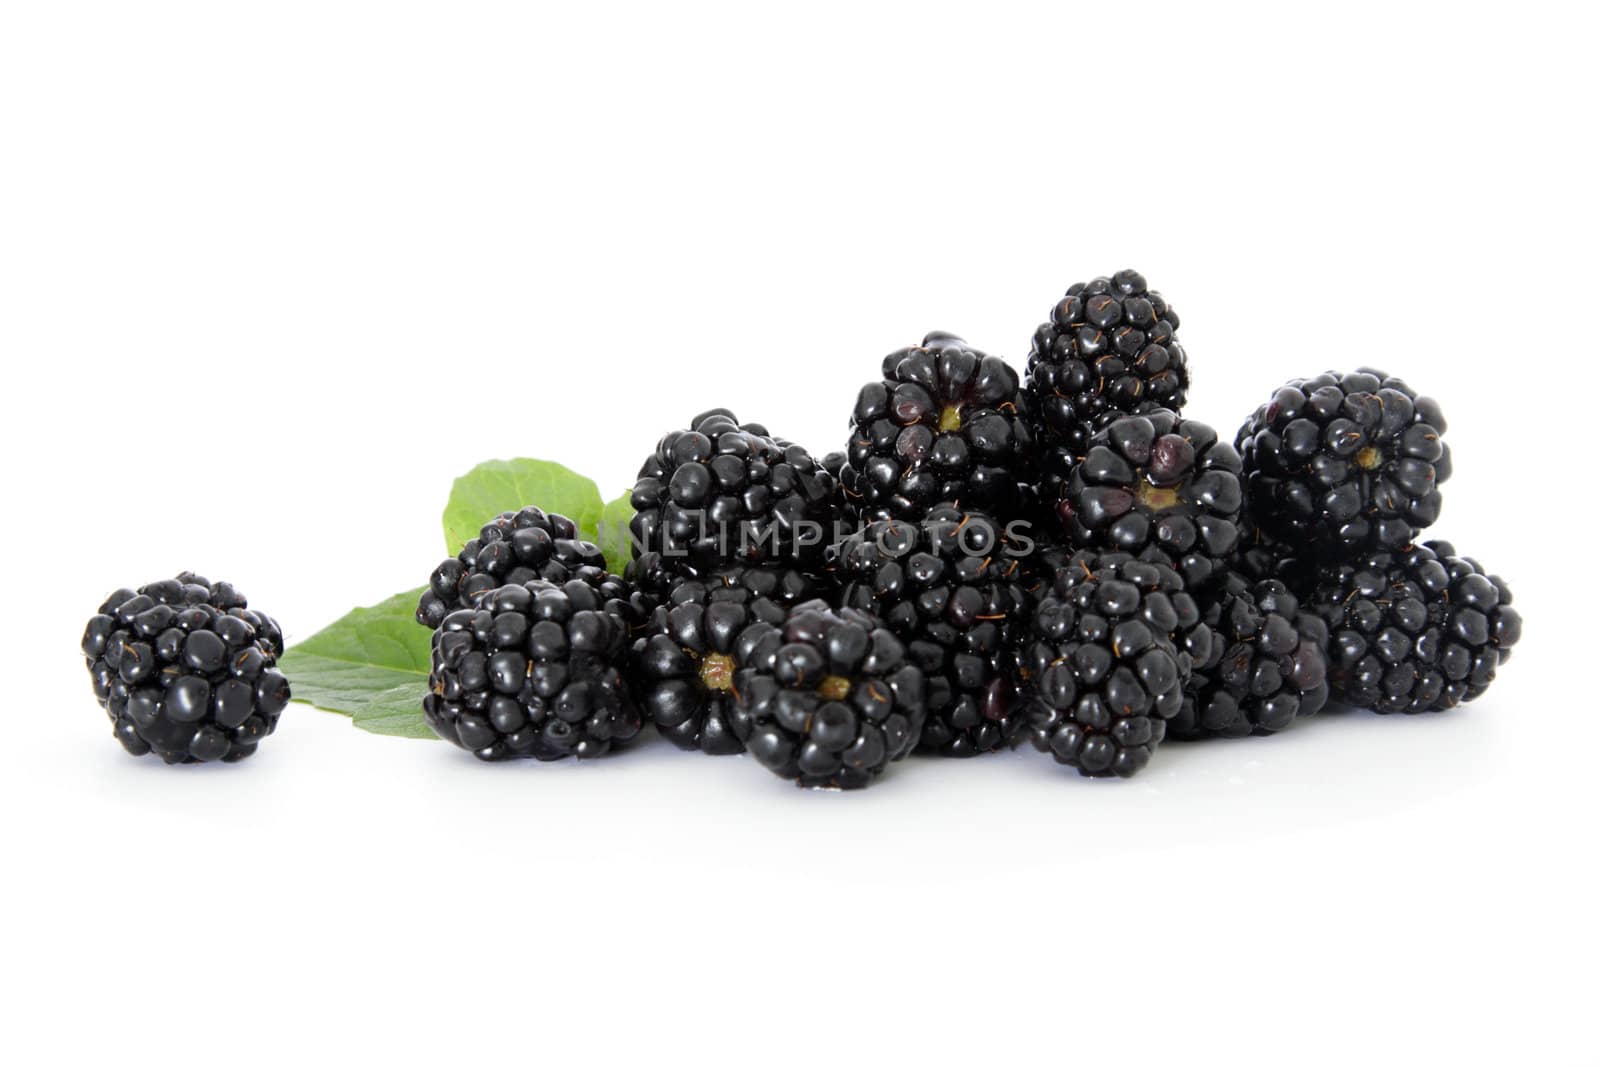 Blackberries by kaarsten